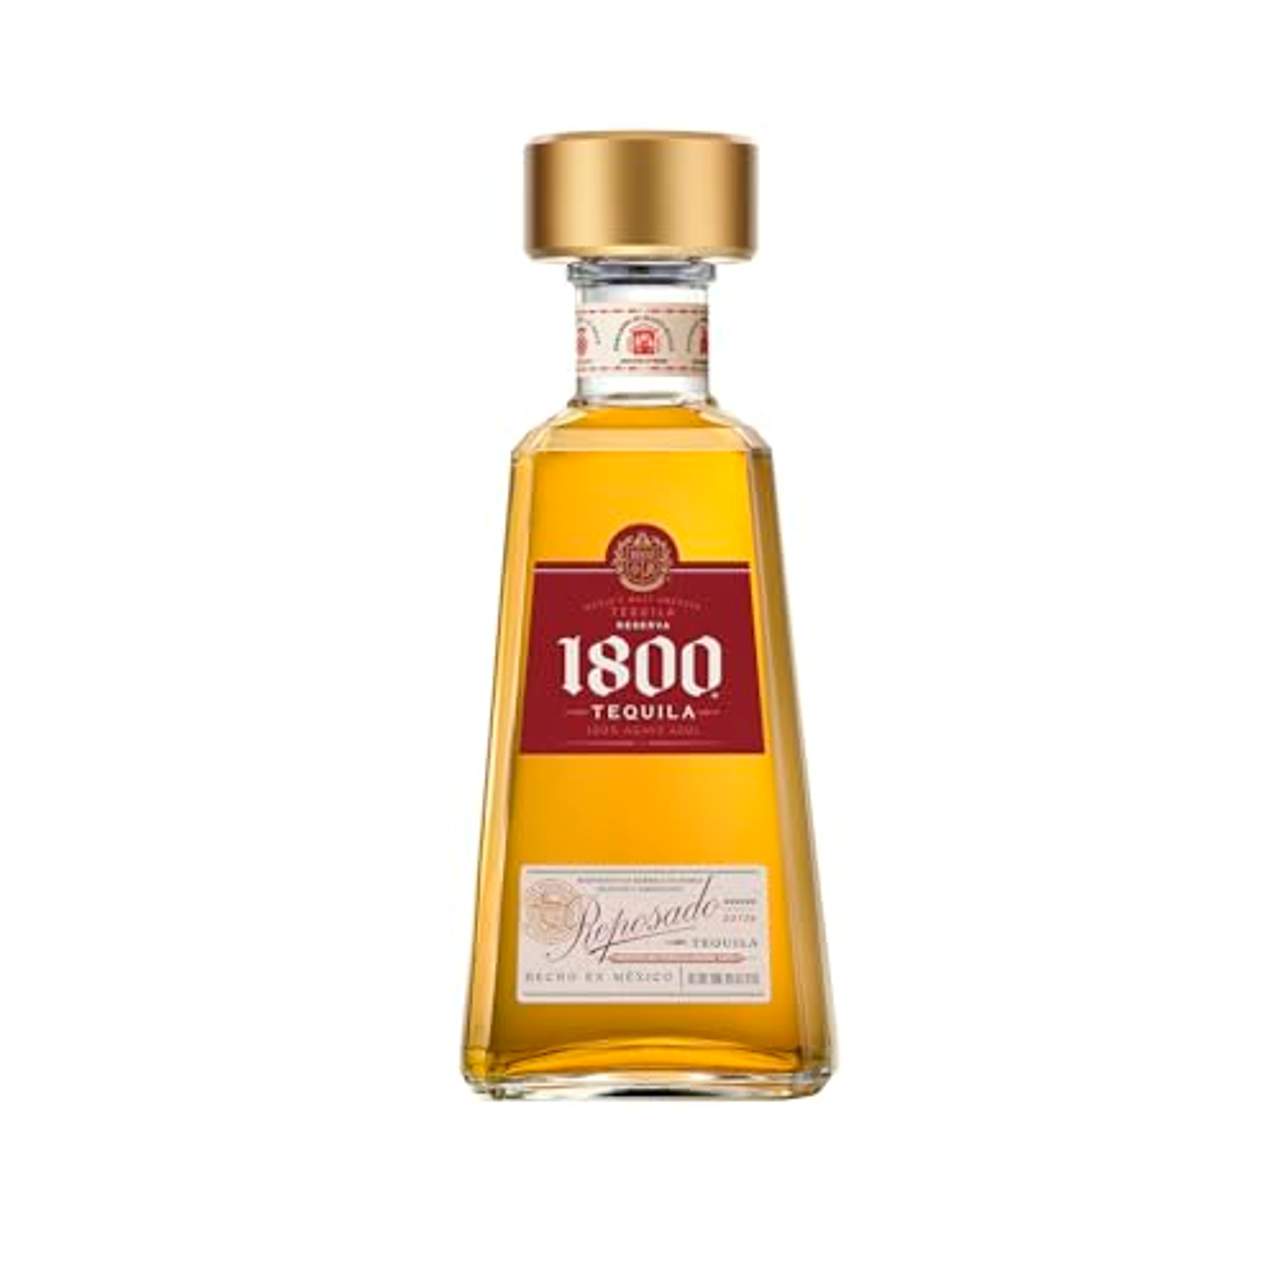 1800 Tequila Reposado von Jose Cuervo